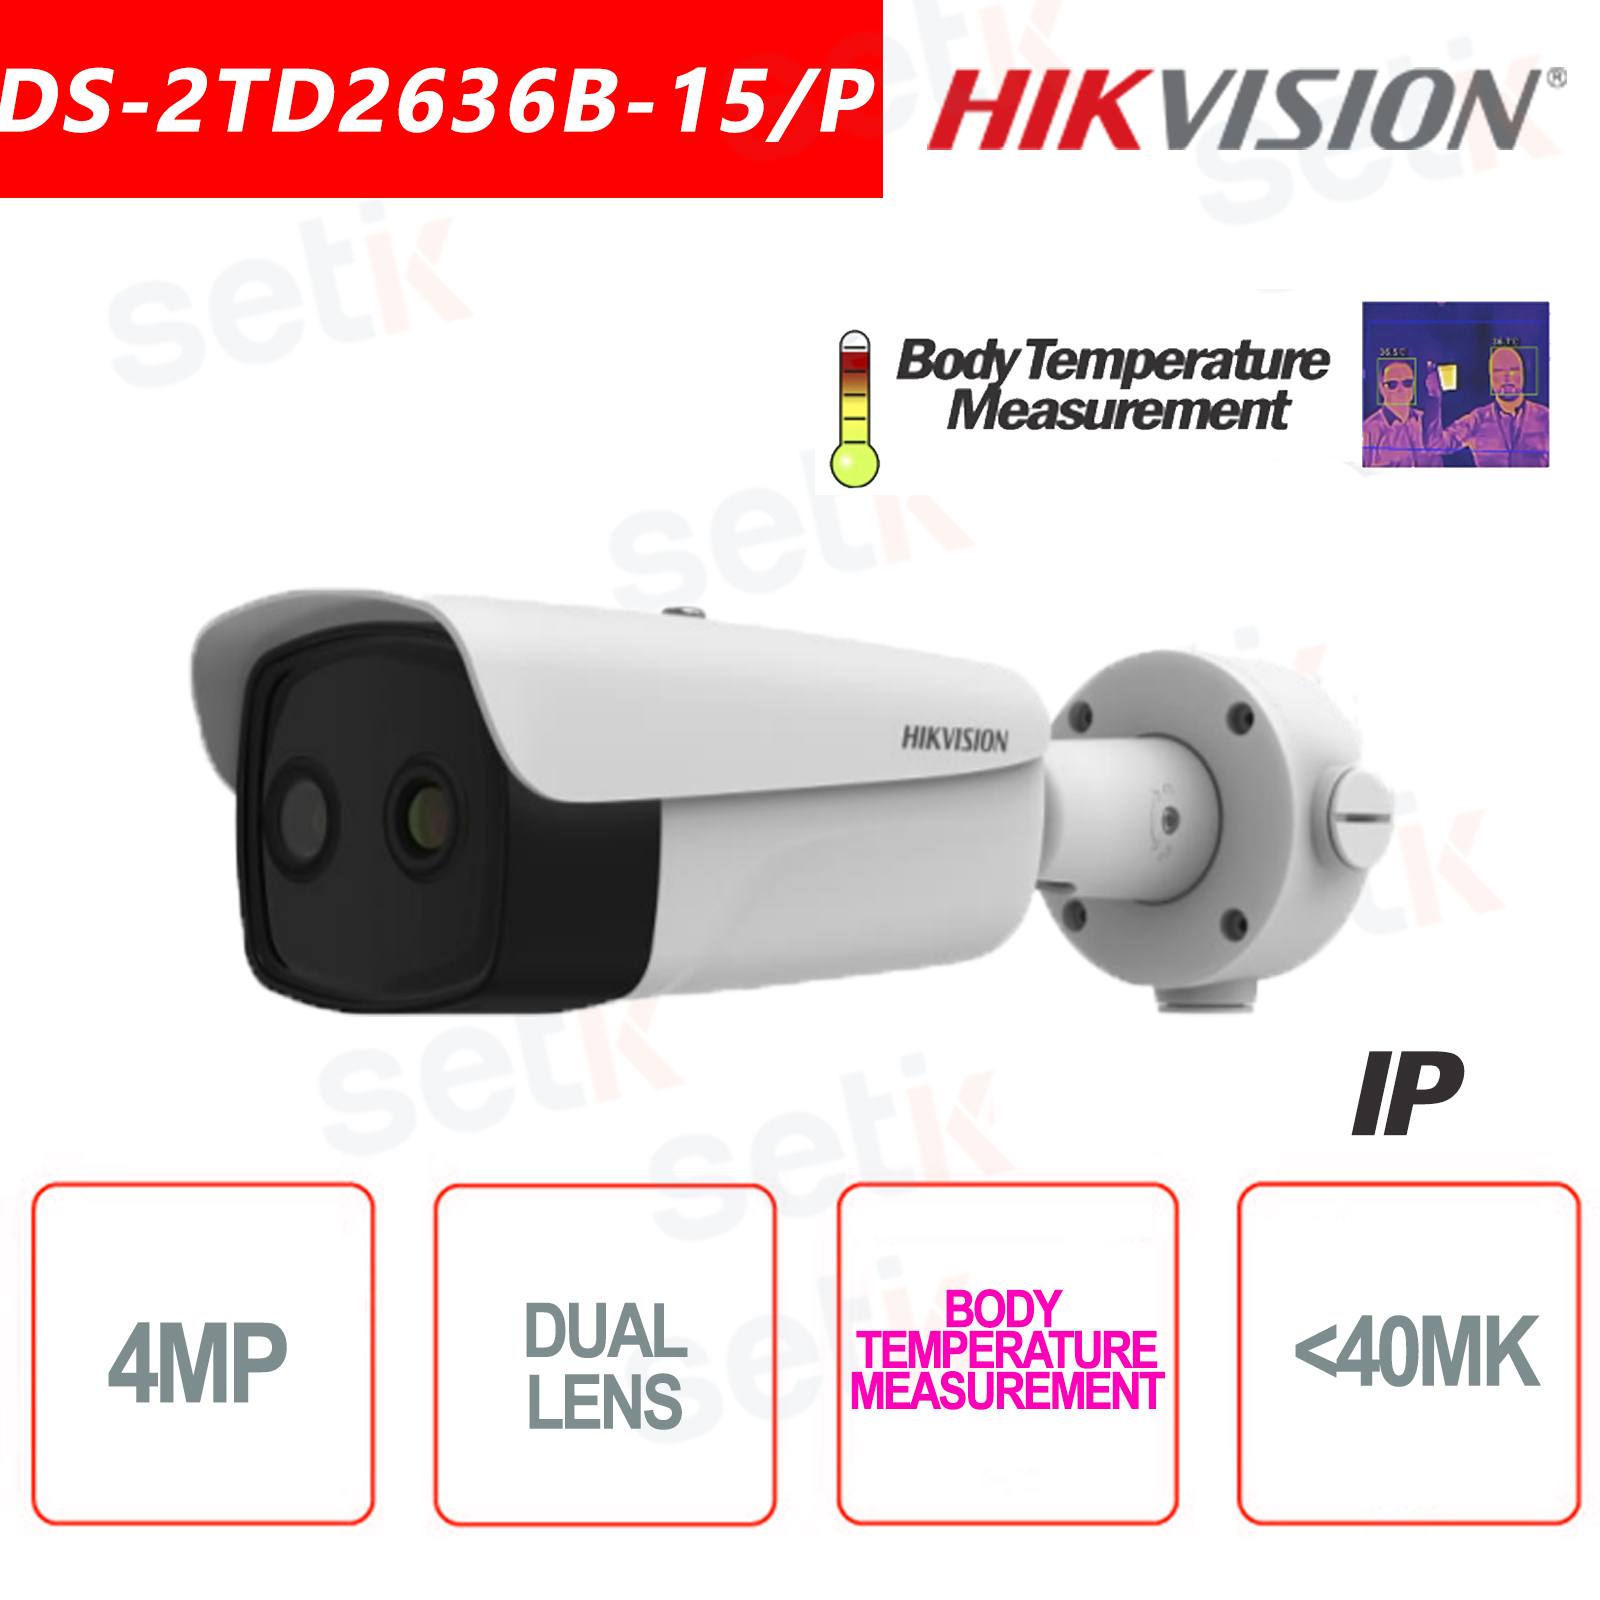 IP PoE Telecamera Hikvision Termica Bullet Misurazione Corporea 40mK